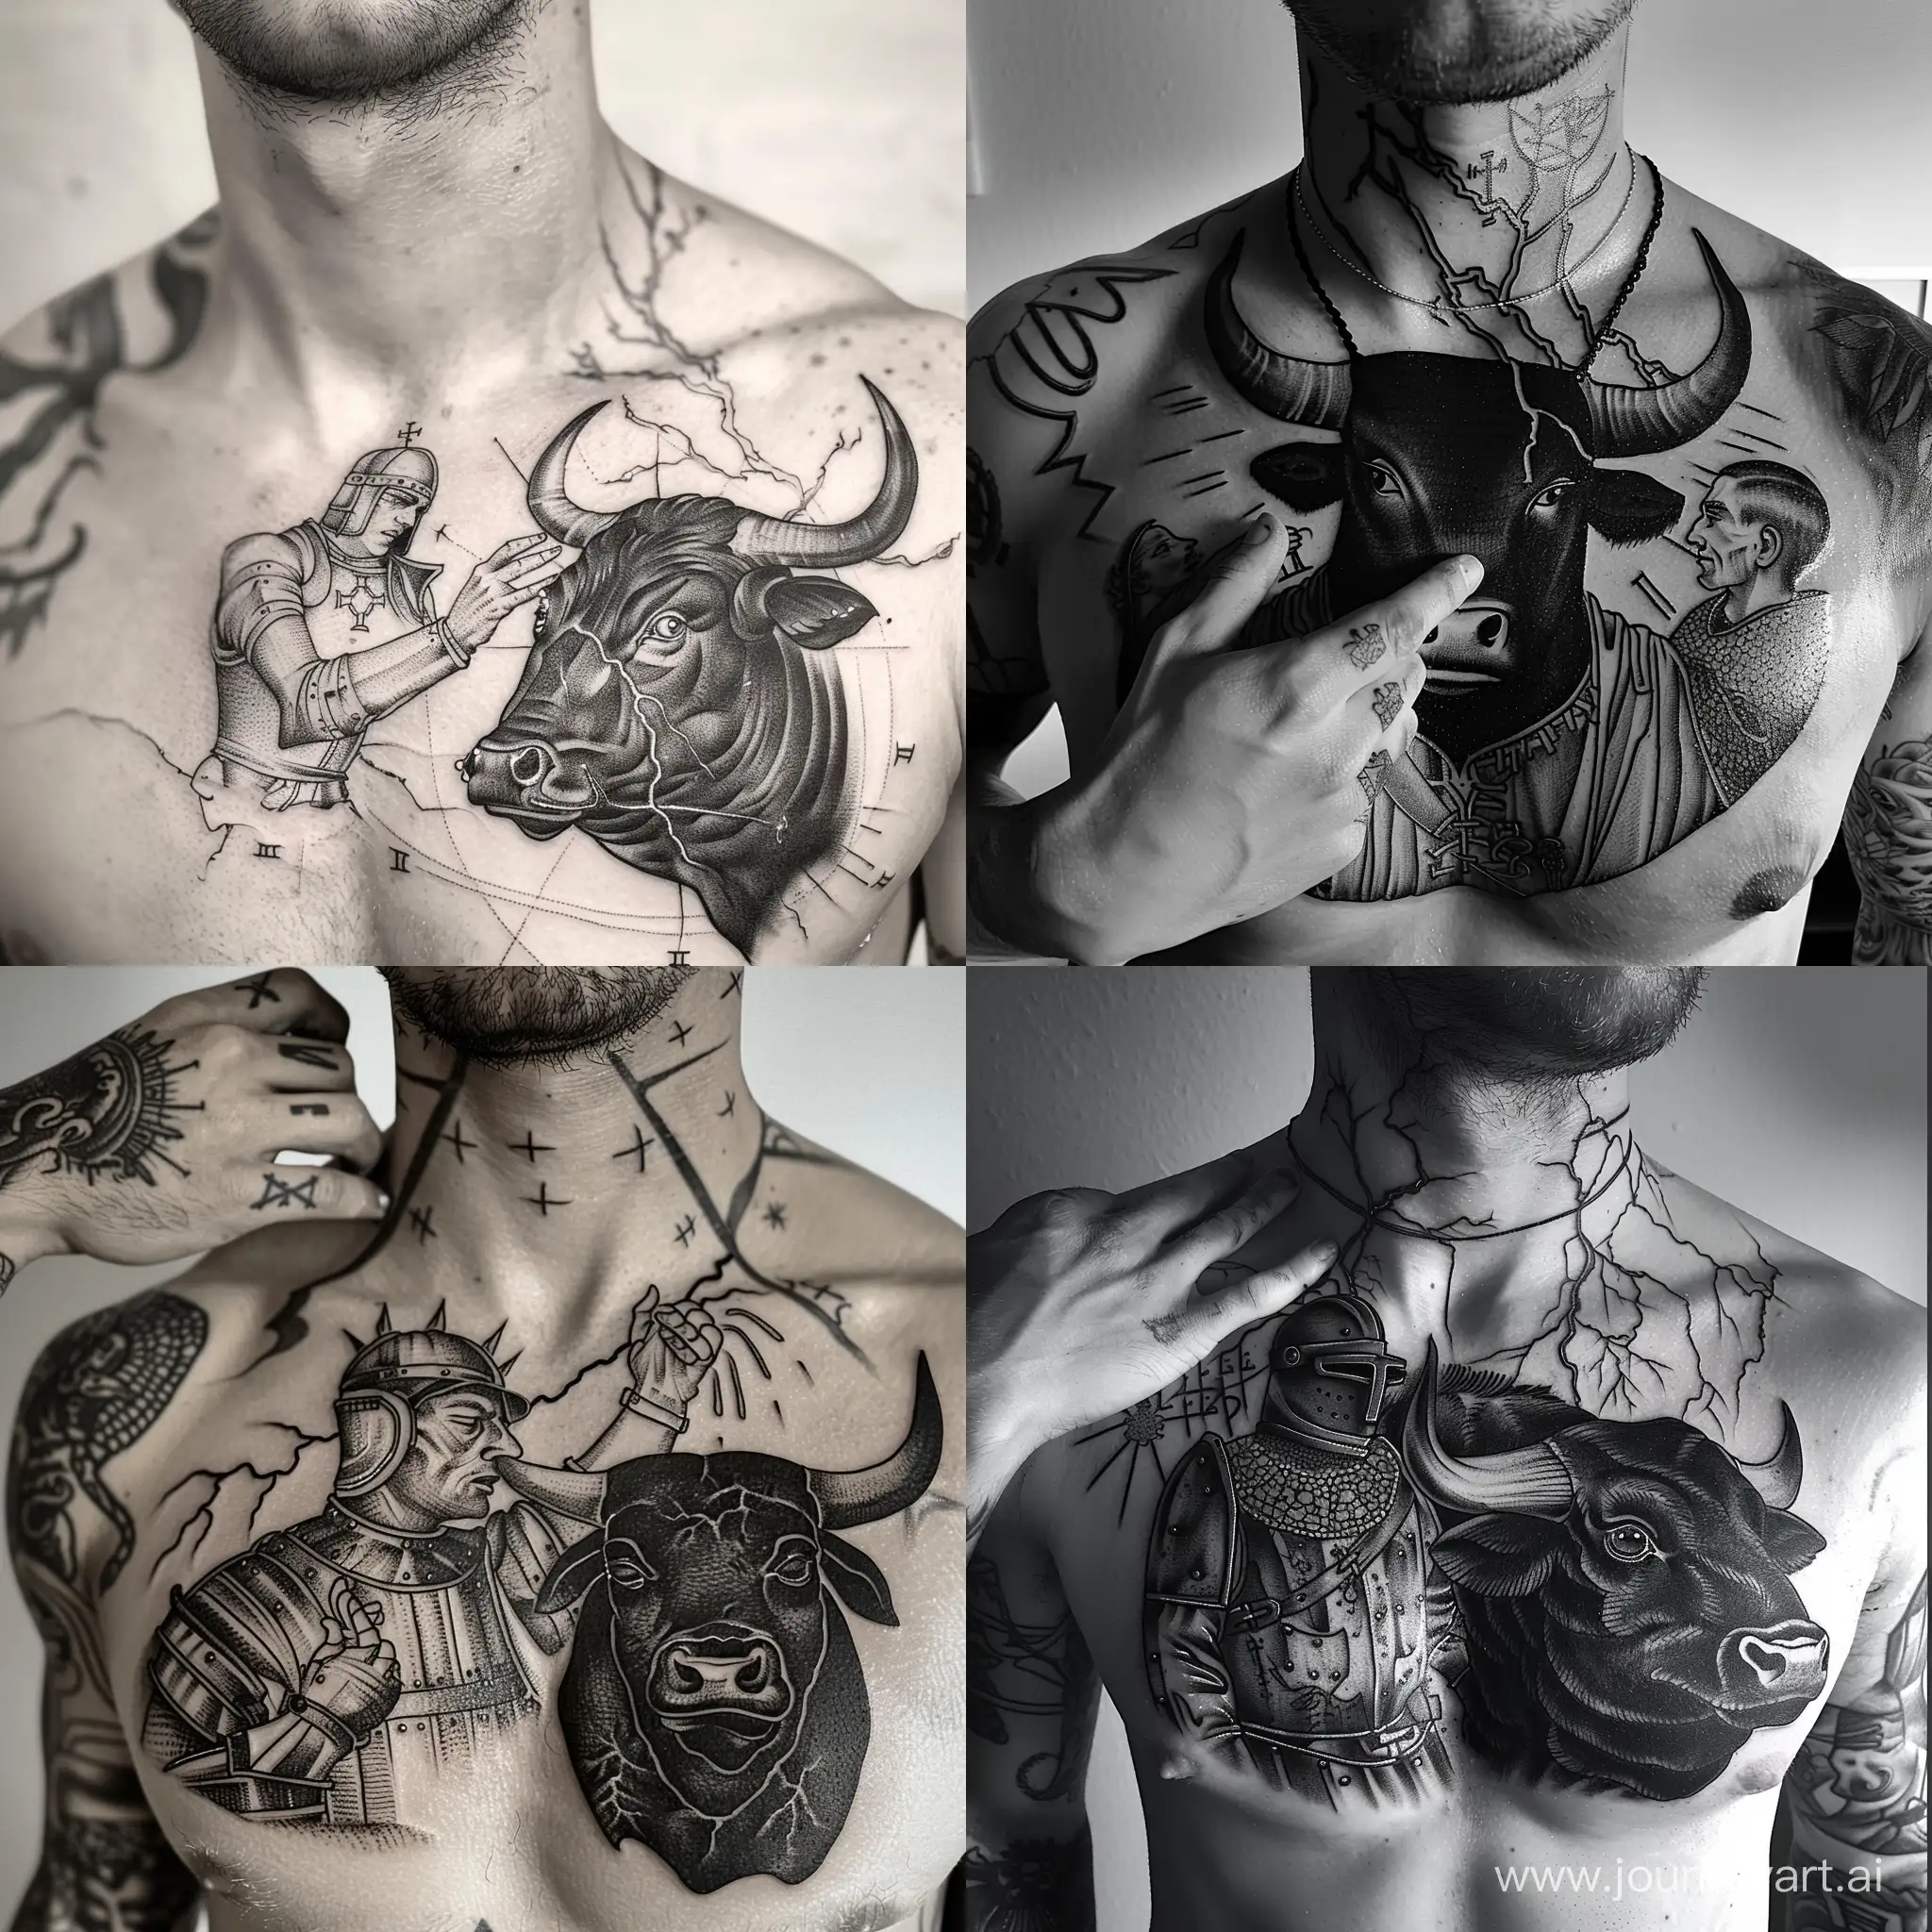 татуировка без рамки на мужской груди, расположенная симметрично, только по области груди и ключиц:  Рыцарь гладит черного быка рукой по голове, сзади бьют молнии, наилучшее качество, в стиле гравюры, в стиле карт таро, только линии и штриховка, черно-белый, прямо в камеру, татуировка, engraving tattoo